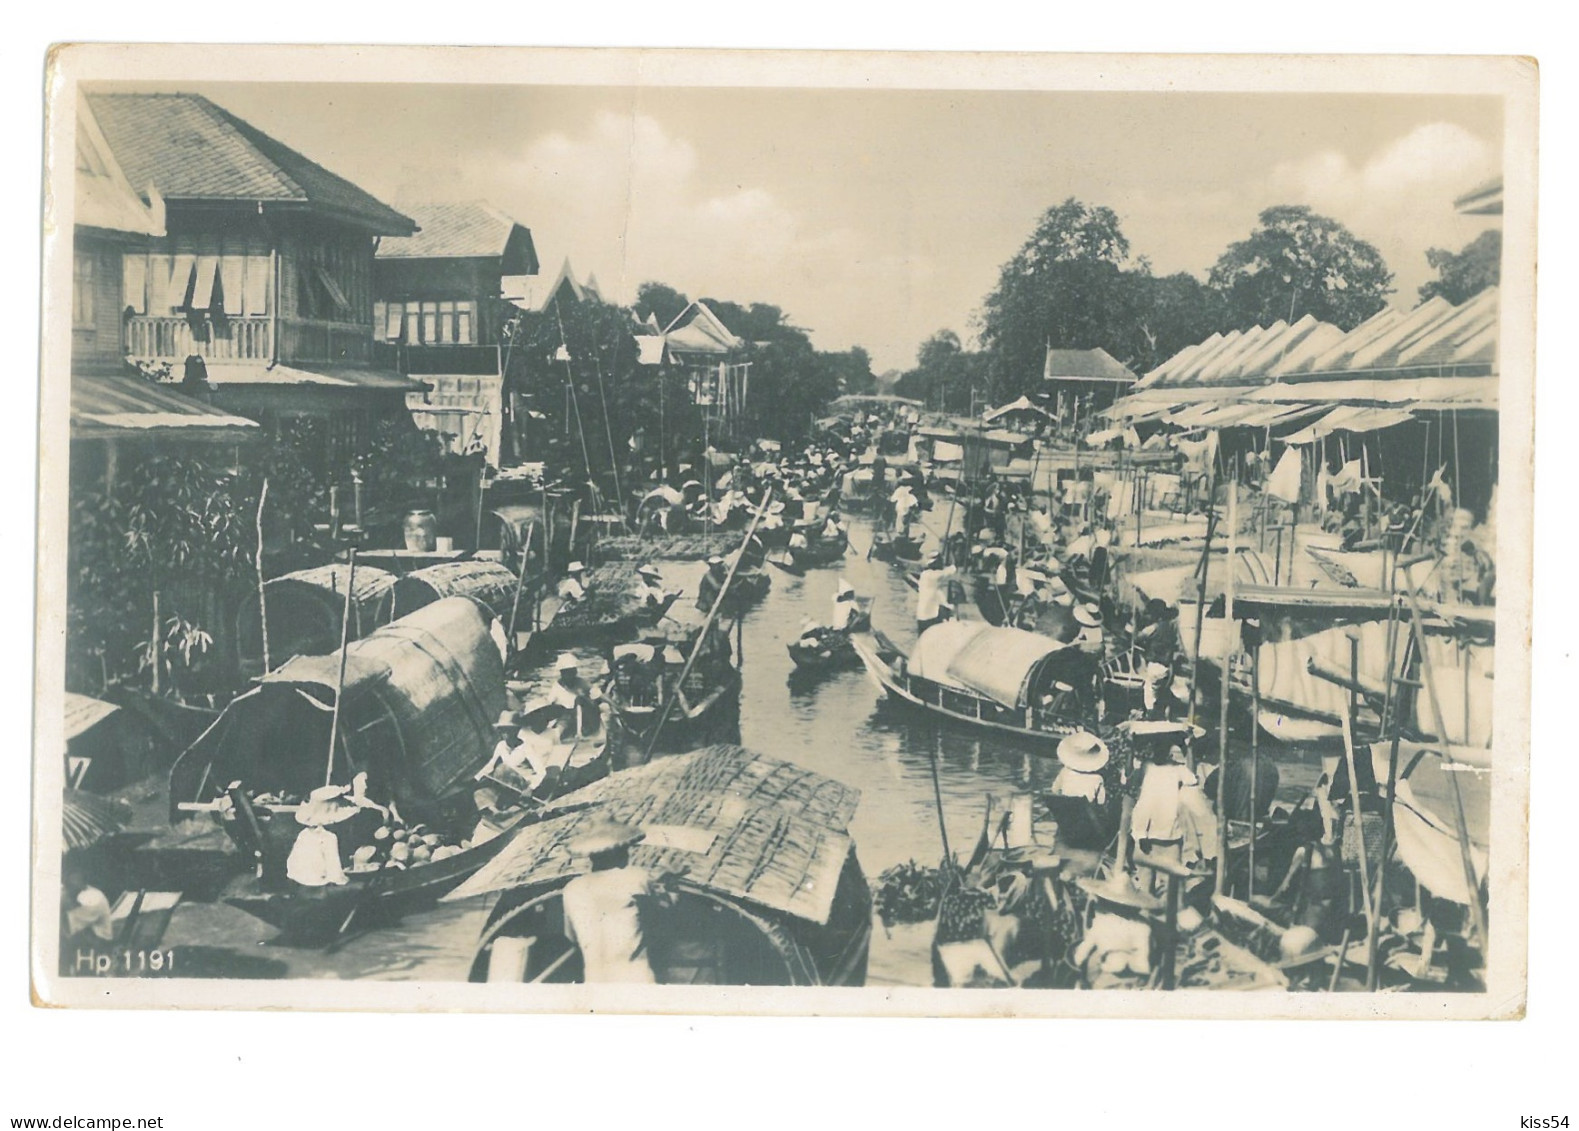 TH 20 - 18602 BANGKOK, Market, Thailand - Old Postcard, Real PHOTO - Used - 1936 - Tailandia